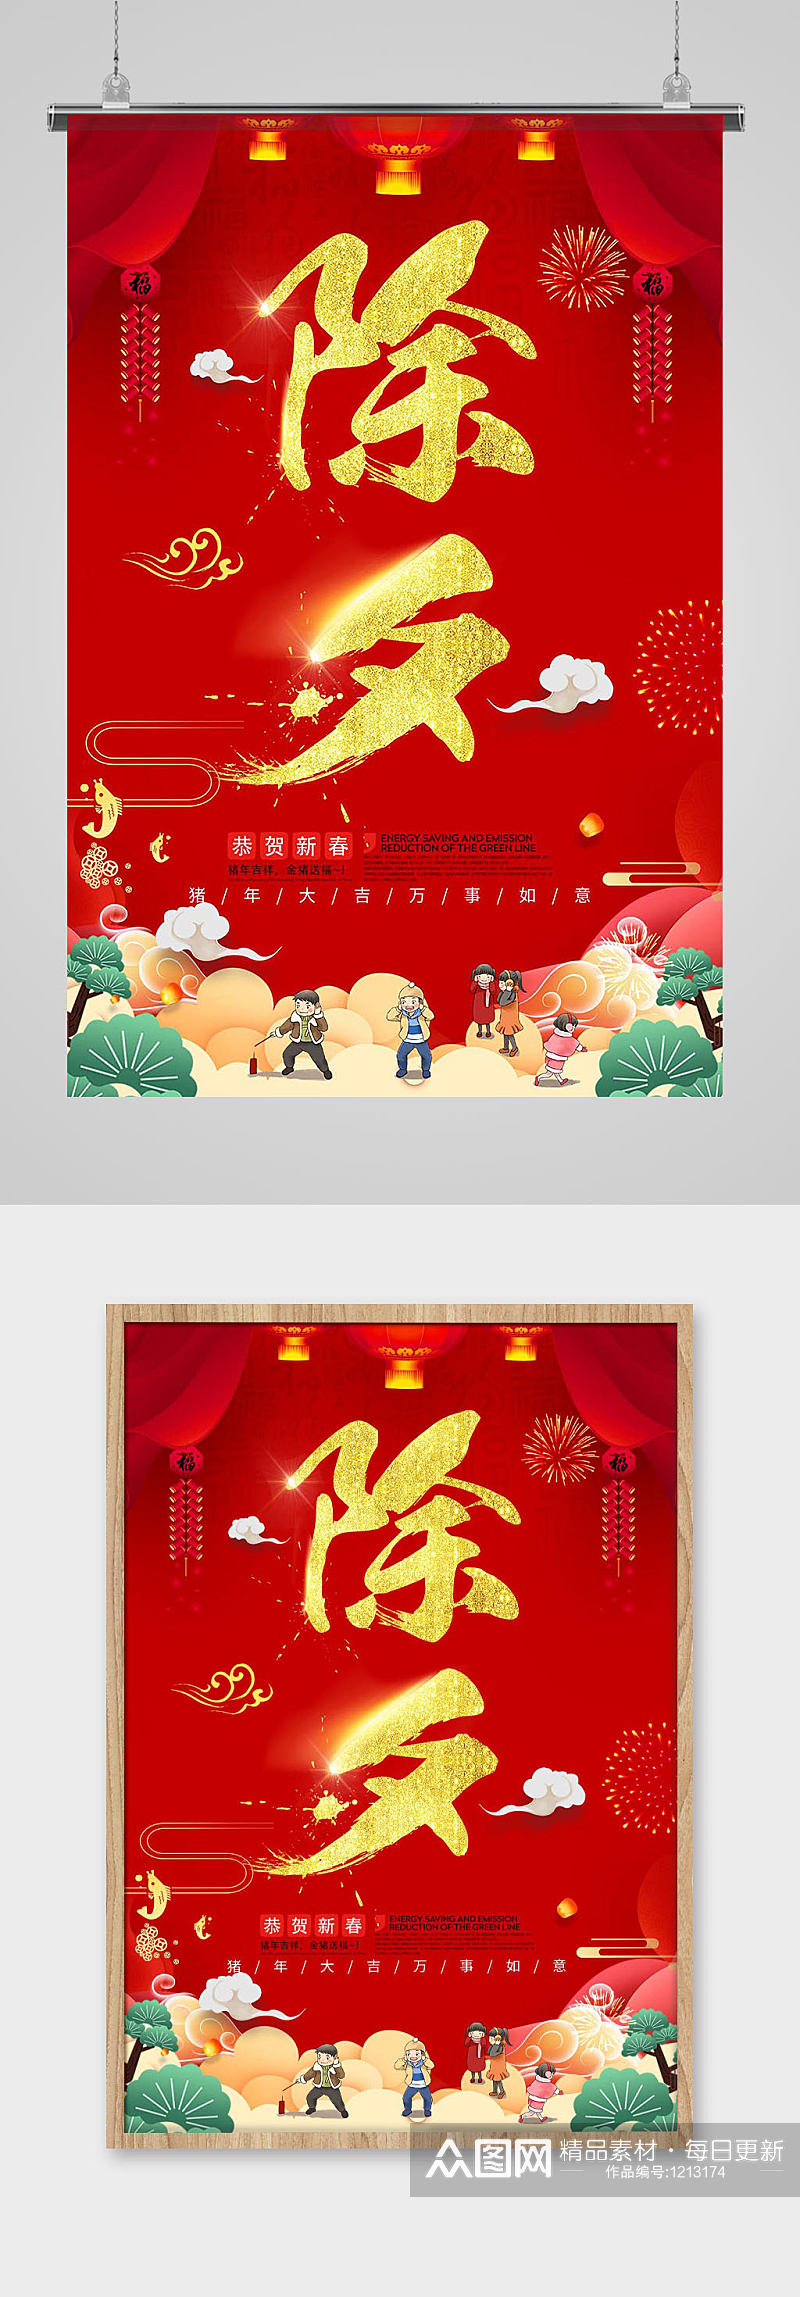 中国传统喜庆红色浮云金色除夕节日海报素材